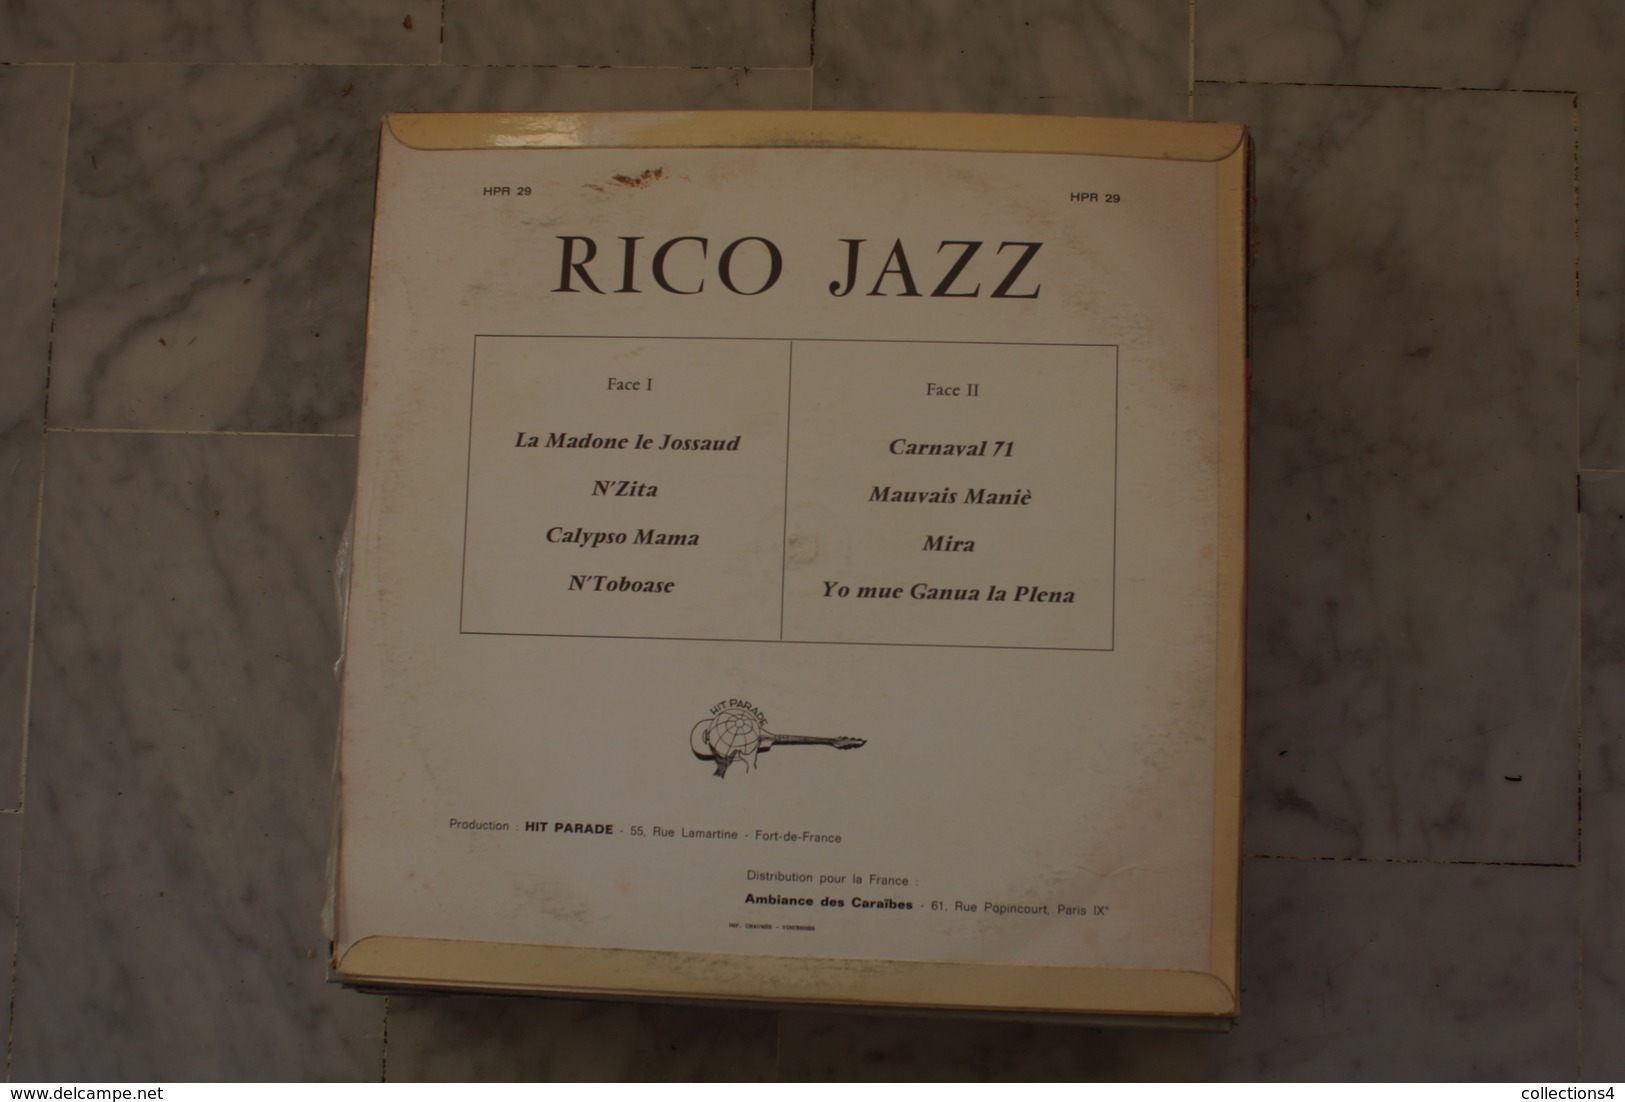 RYCO JAZZ RARE LP DE 19?? VALEUR ++++ JAZZ CALYPSO - Jazz